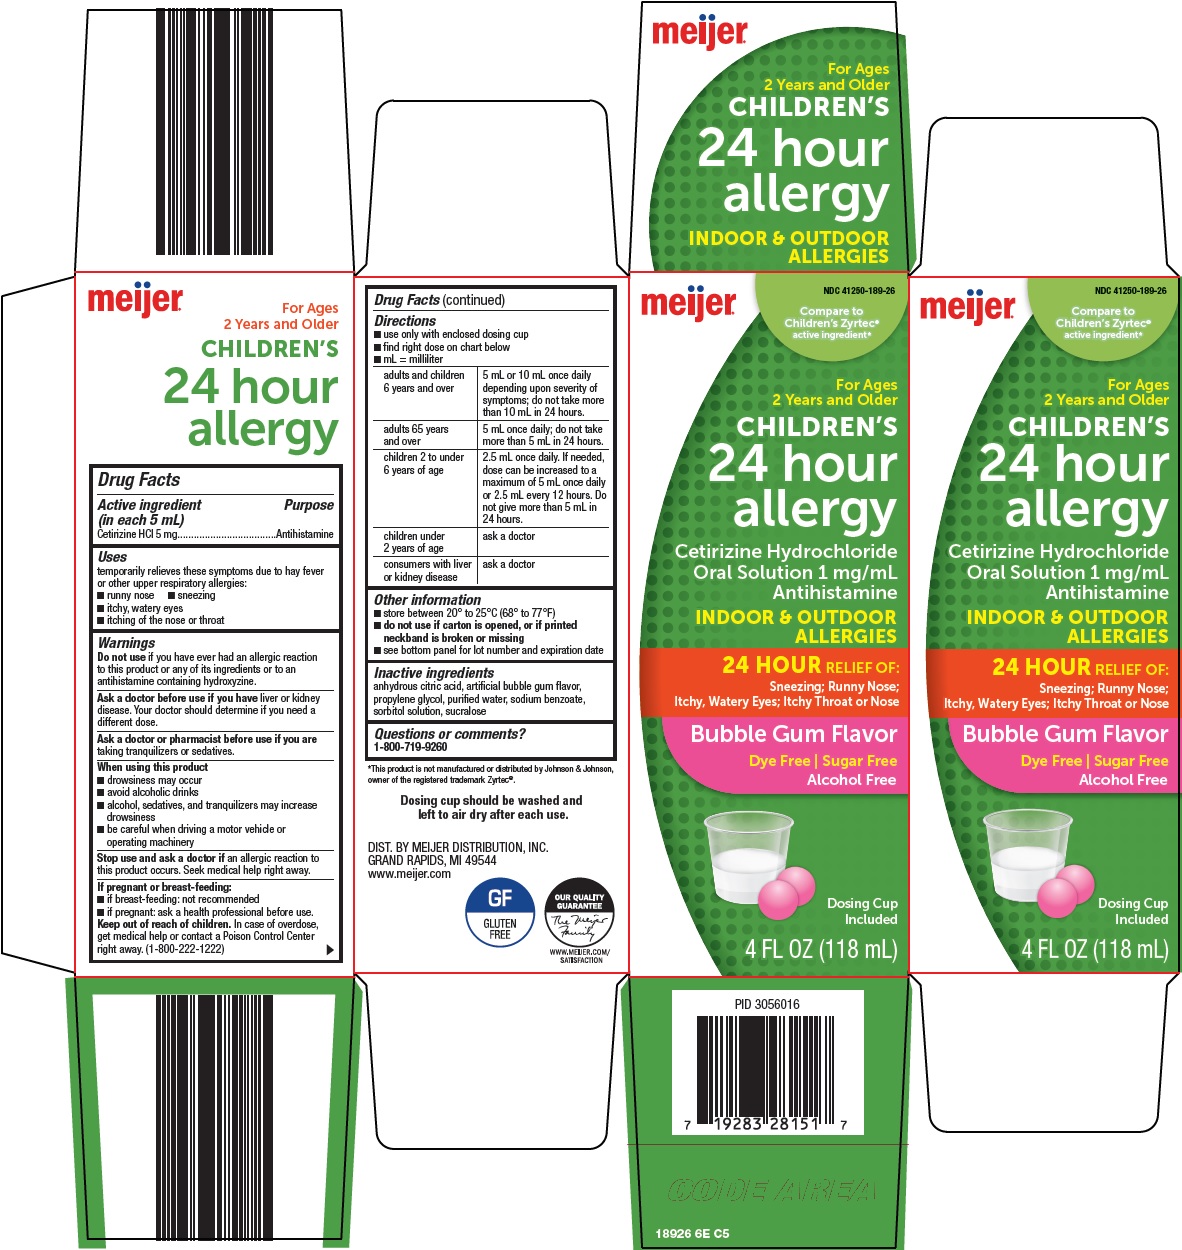 189-6e-childrens-24-hour-allergy.jpg